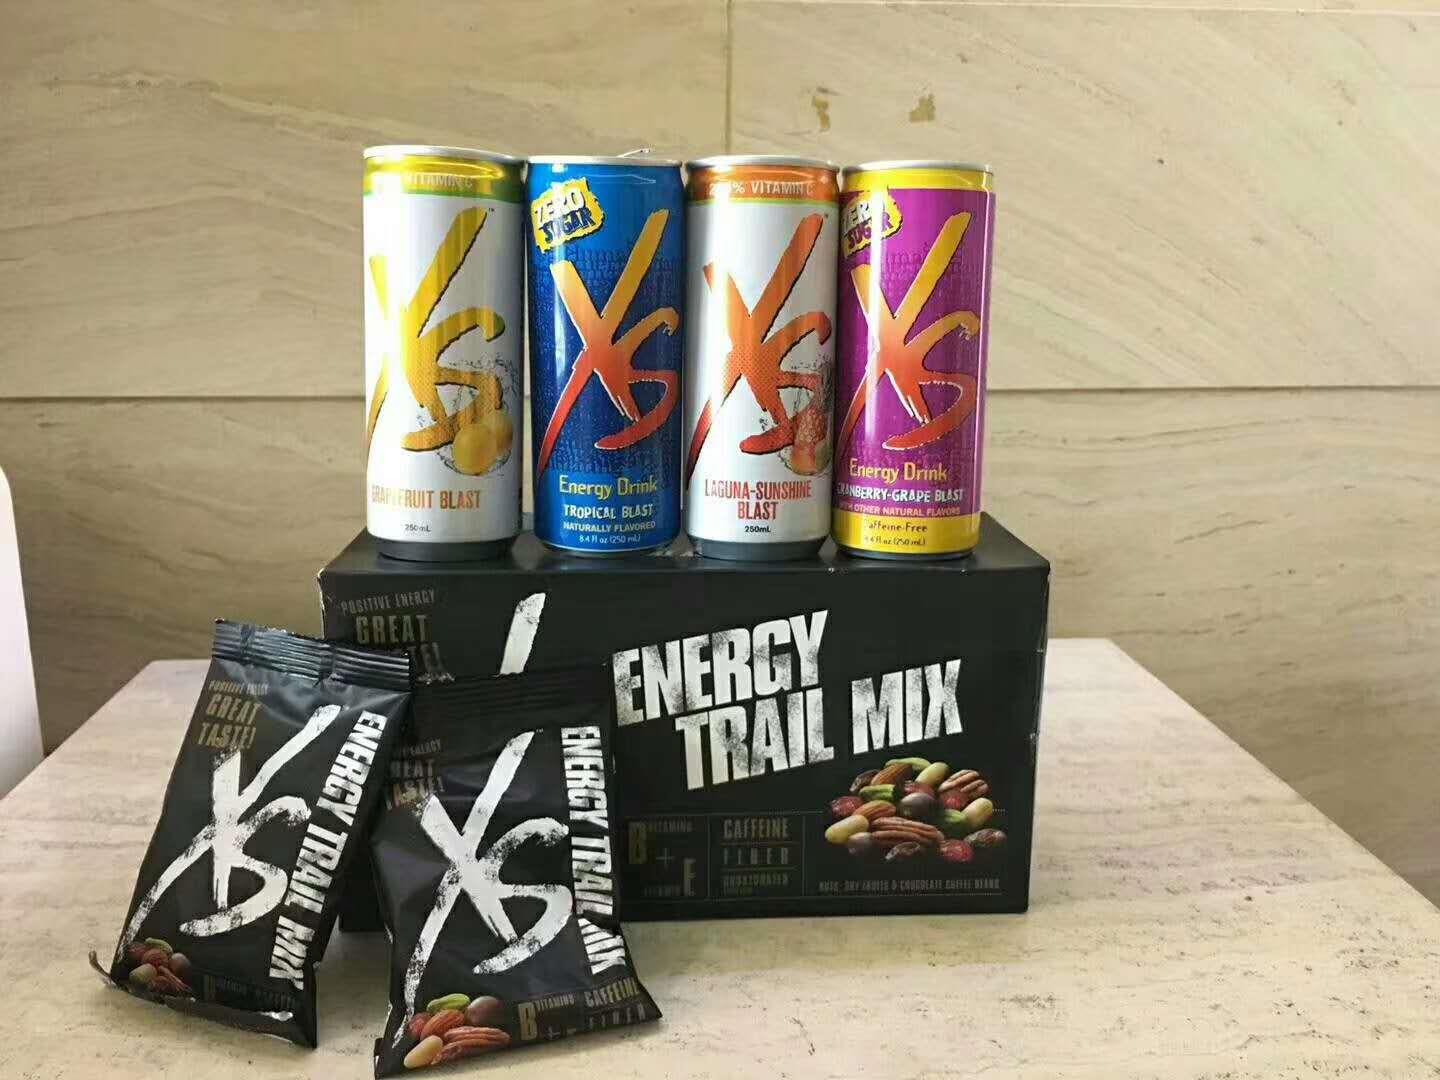 安利xs能量饮料,一款无糖无色素的健康饮料